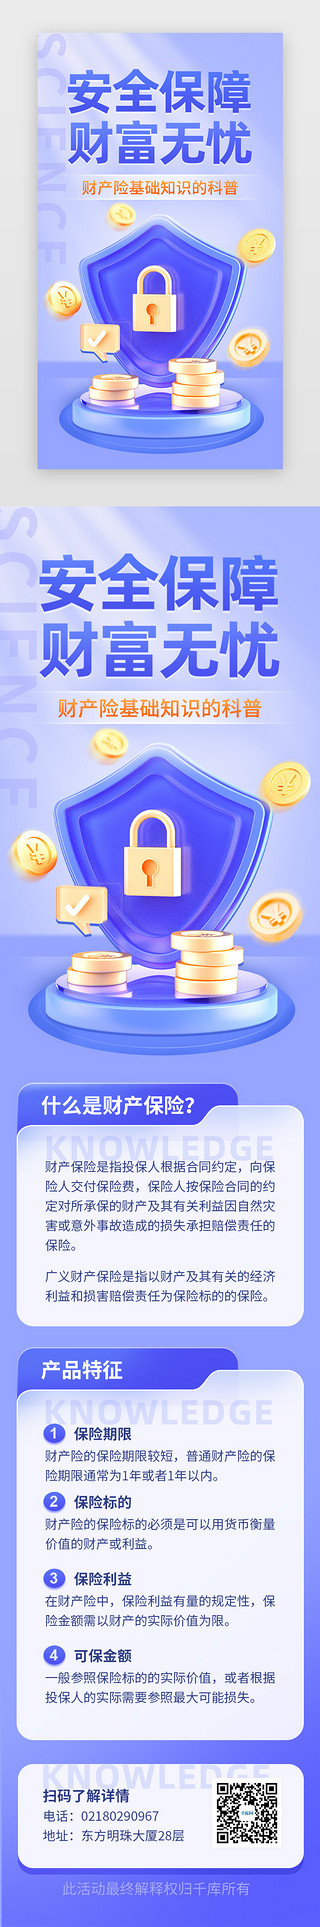 科普文章配图UI设计素材_财产保险知识科普app主界面立体蓝紫盾牌